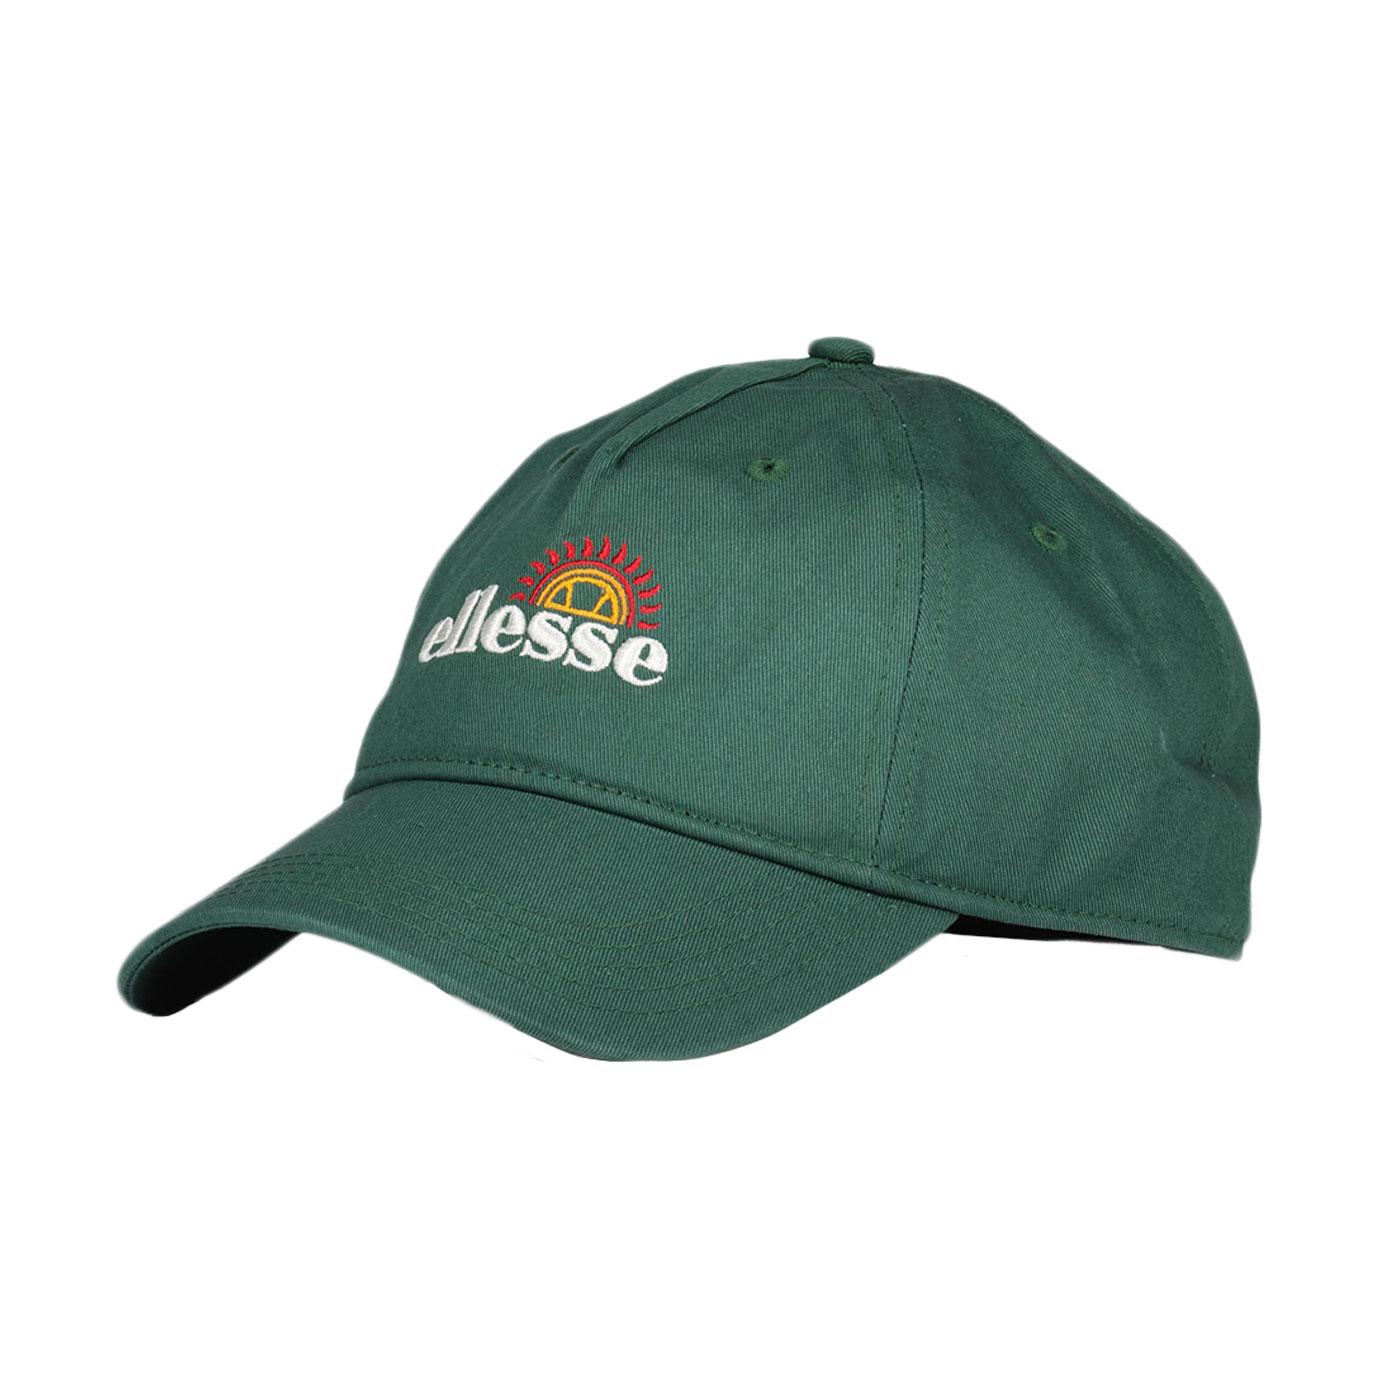 Solaris ELLESSE Retro Brimmed Baseball Cap (Green)